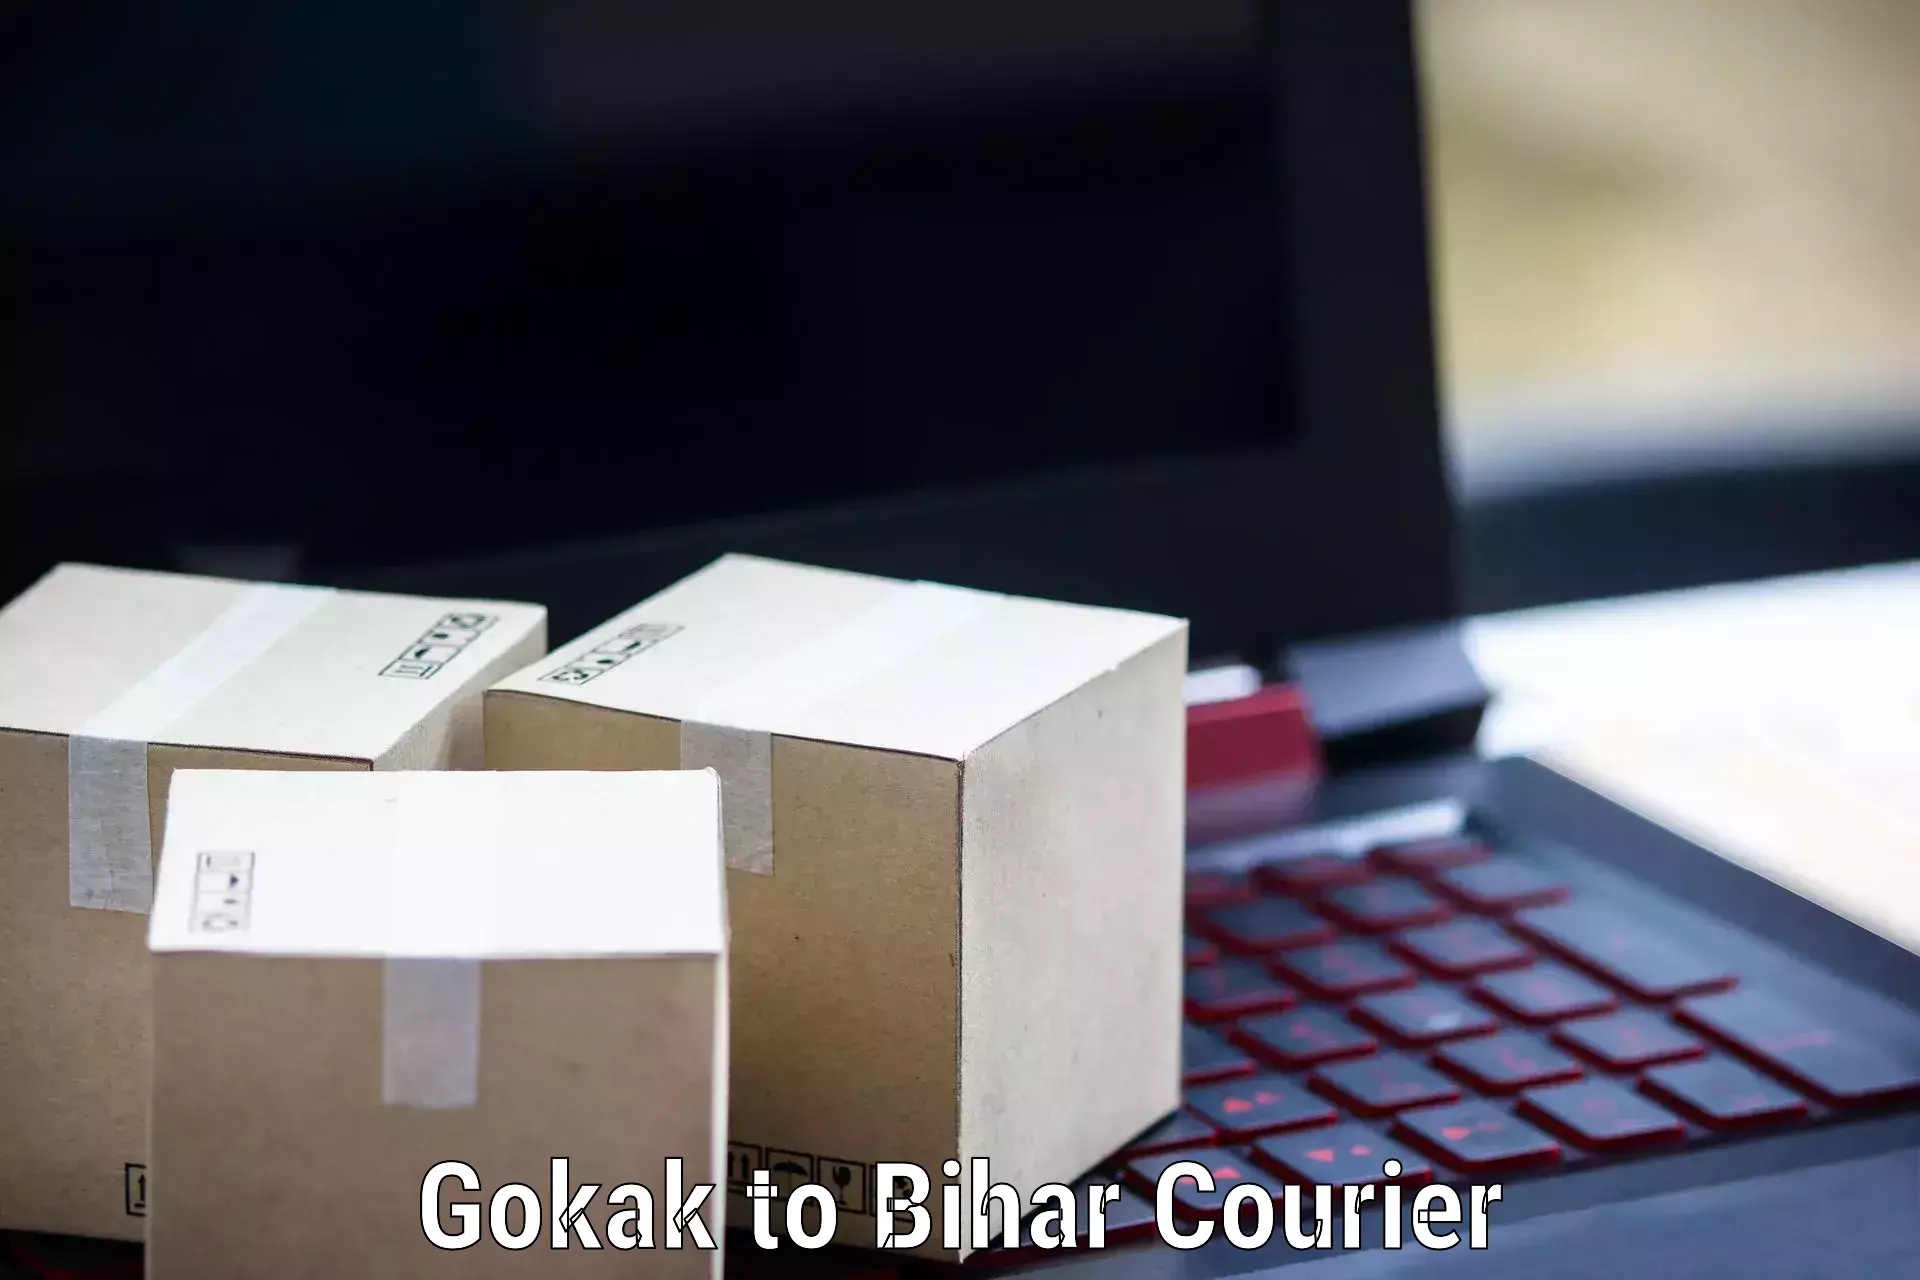 User-friendly courier app Gokak to Bharwara